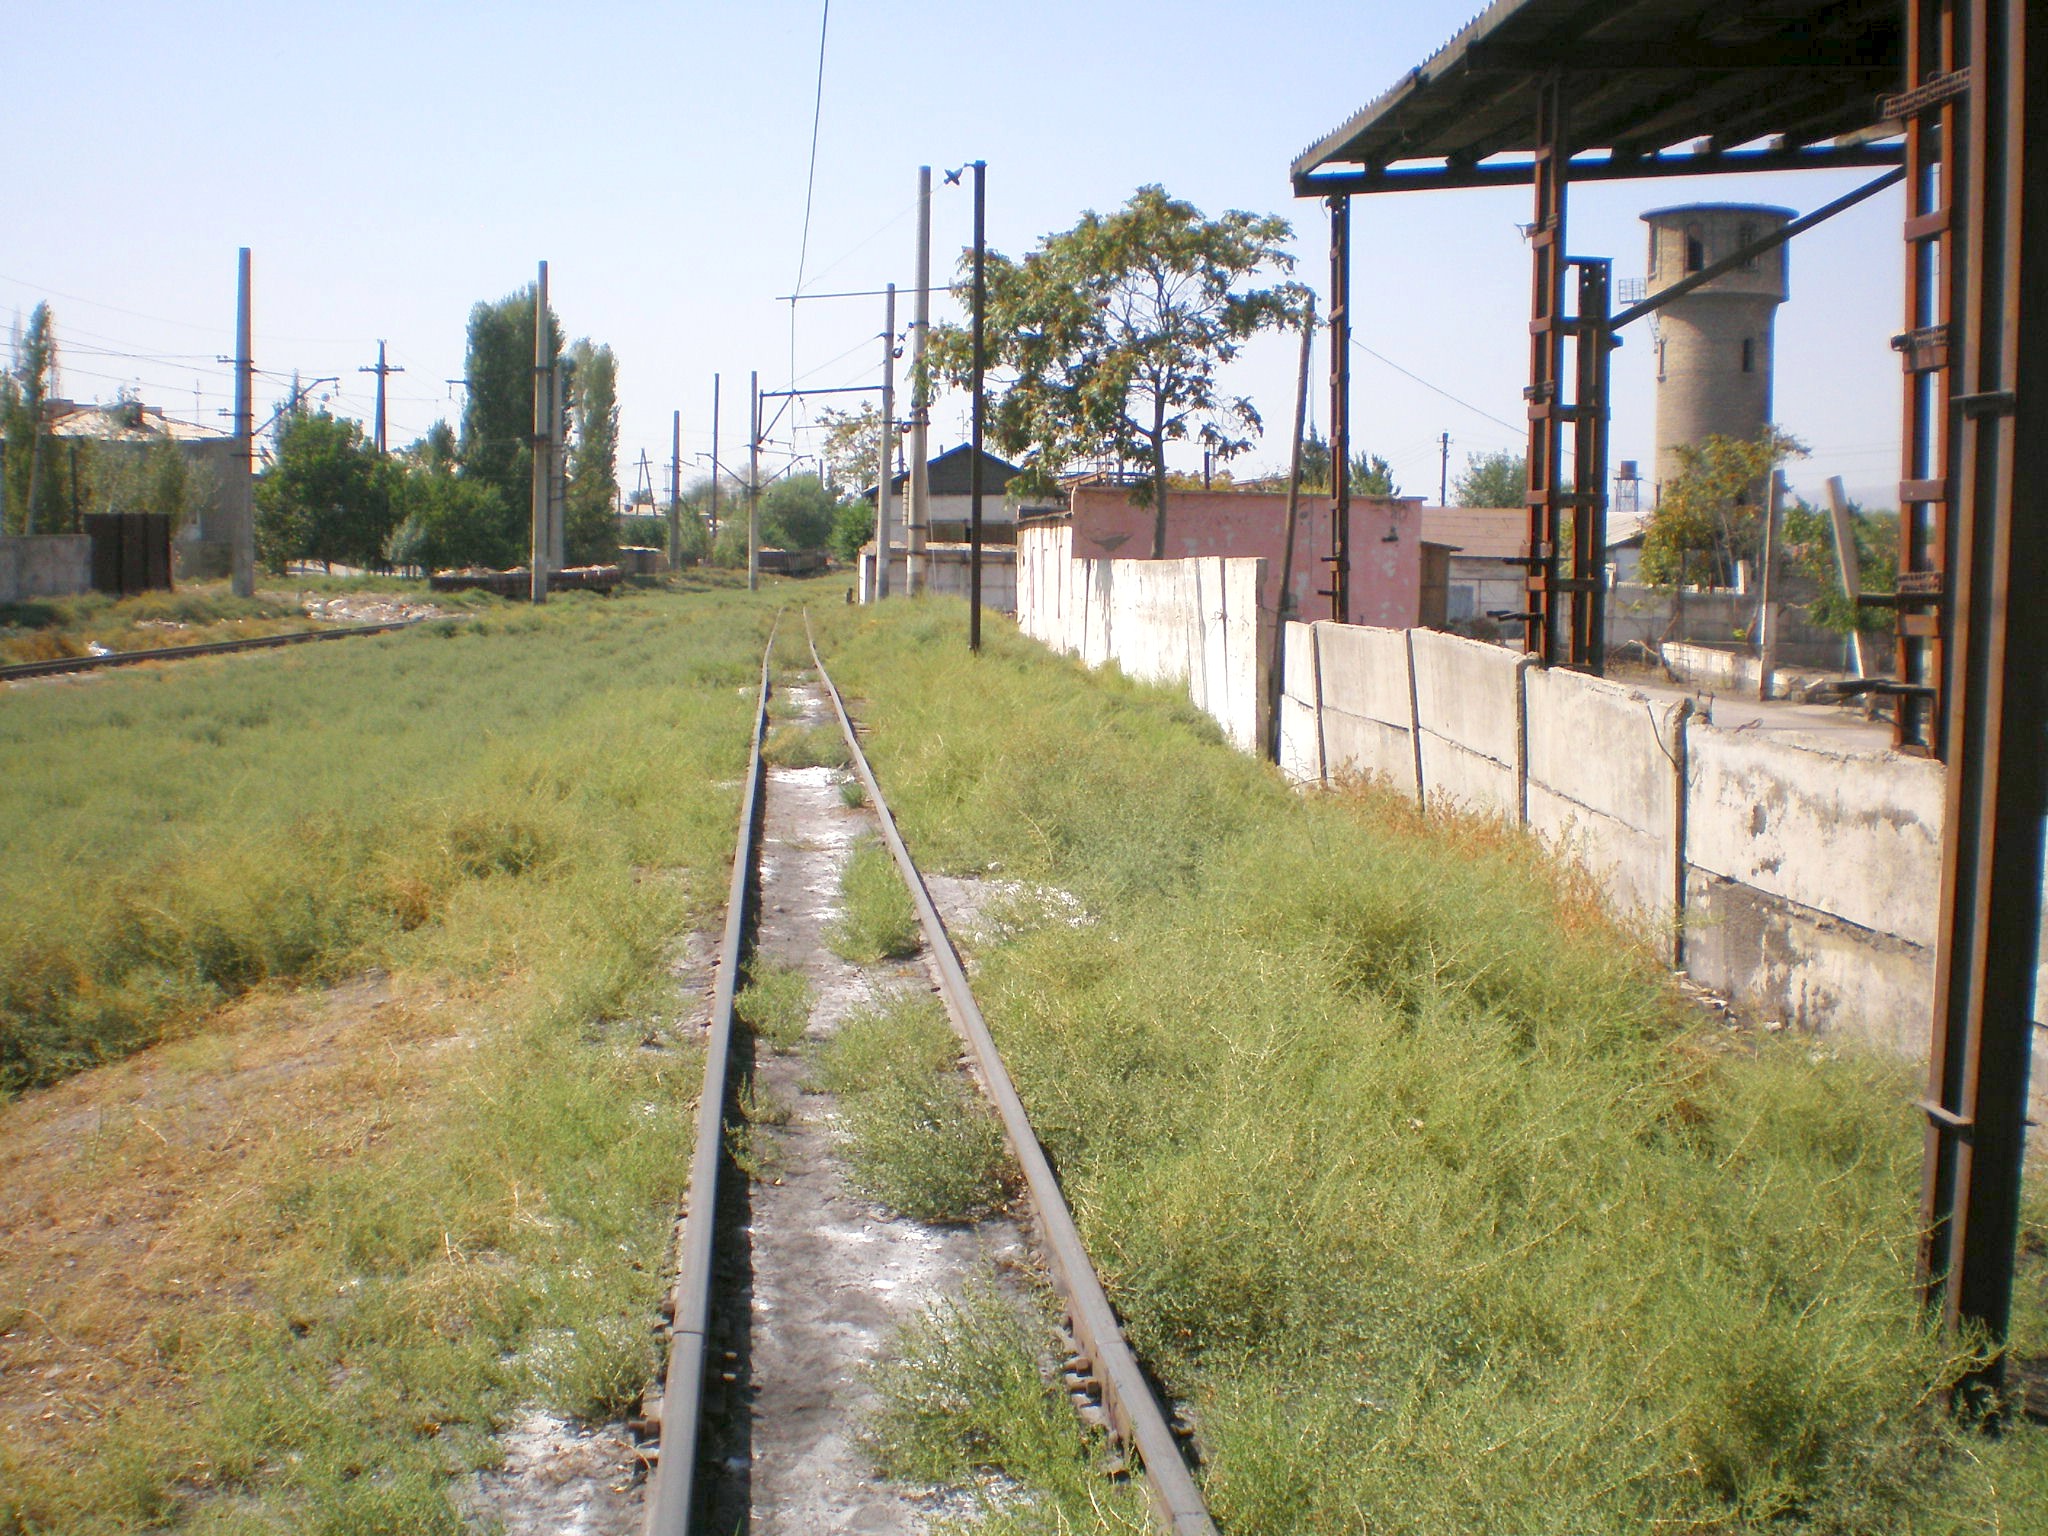 Сулюктинская узкоколейная железная дорога  —  фотографии, сделанные в 2008 году (часть 15)